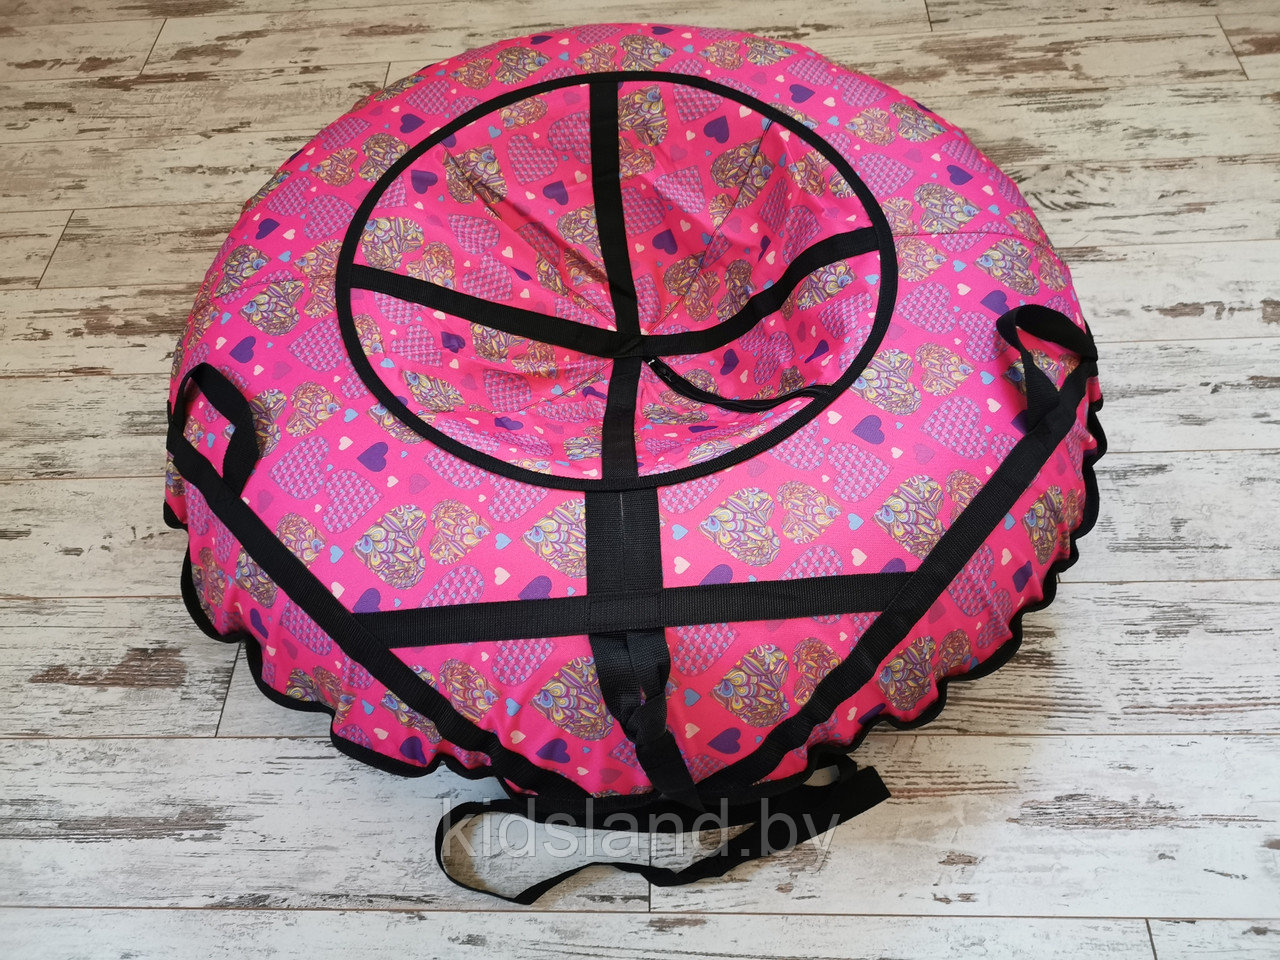 Тюбинг (ватрушка, надувные санки),диаметр 110 см "Розовые сердца"